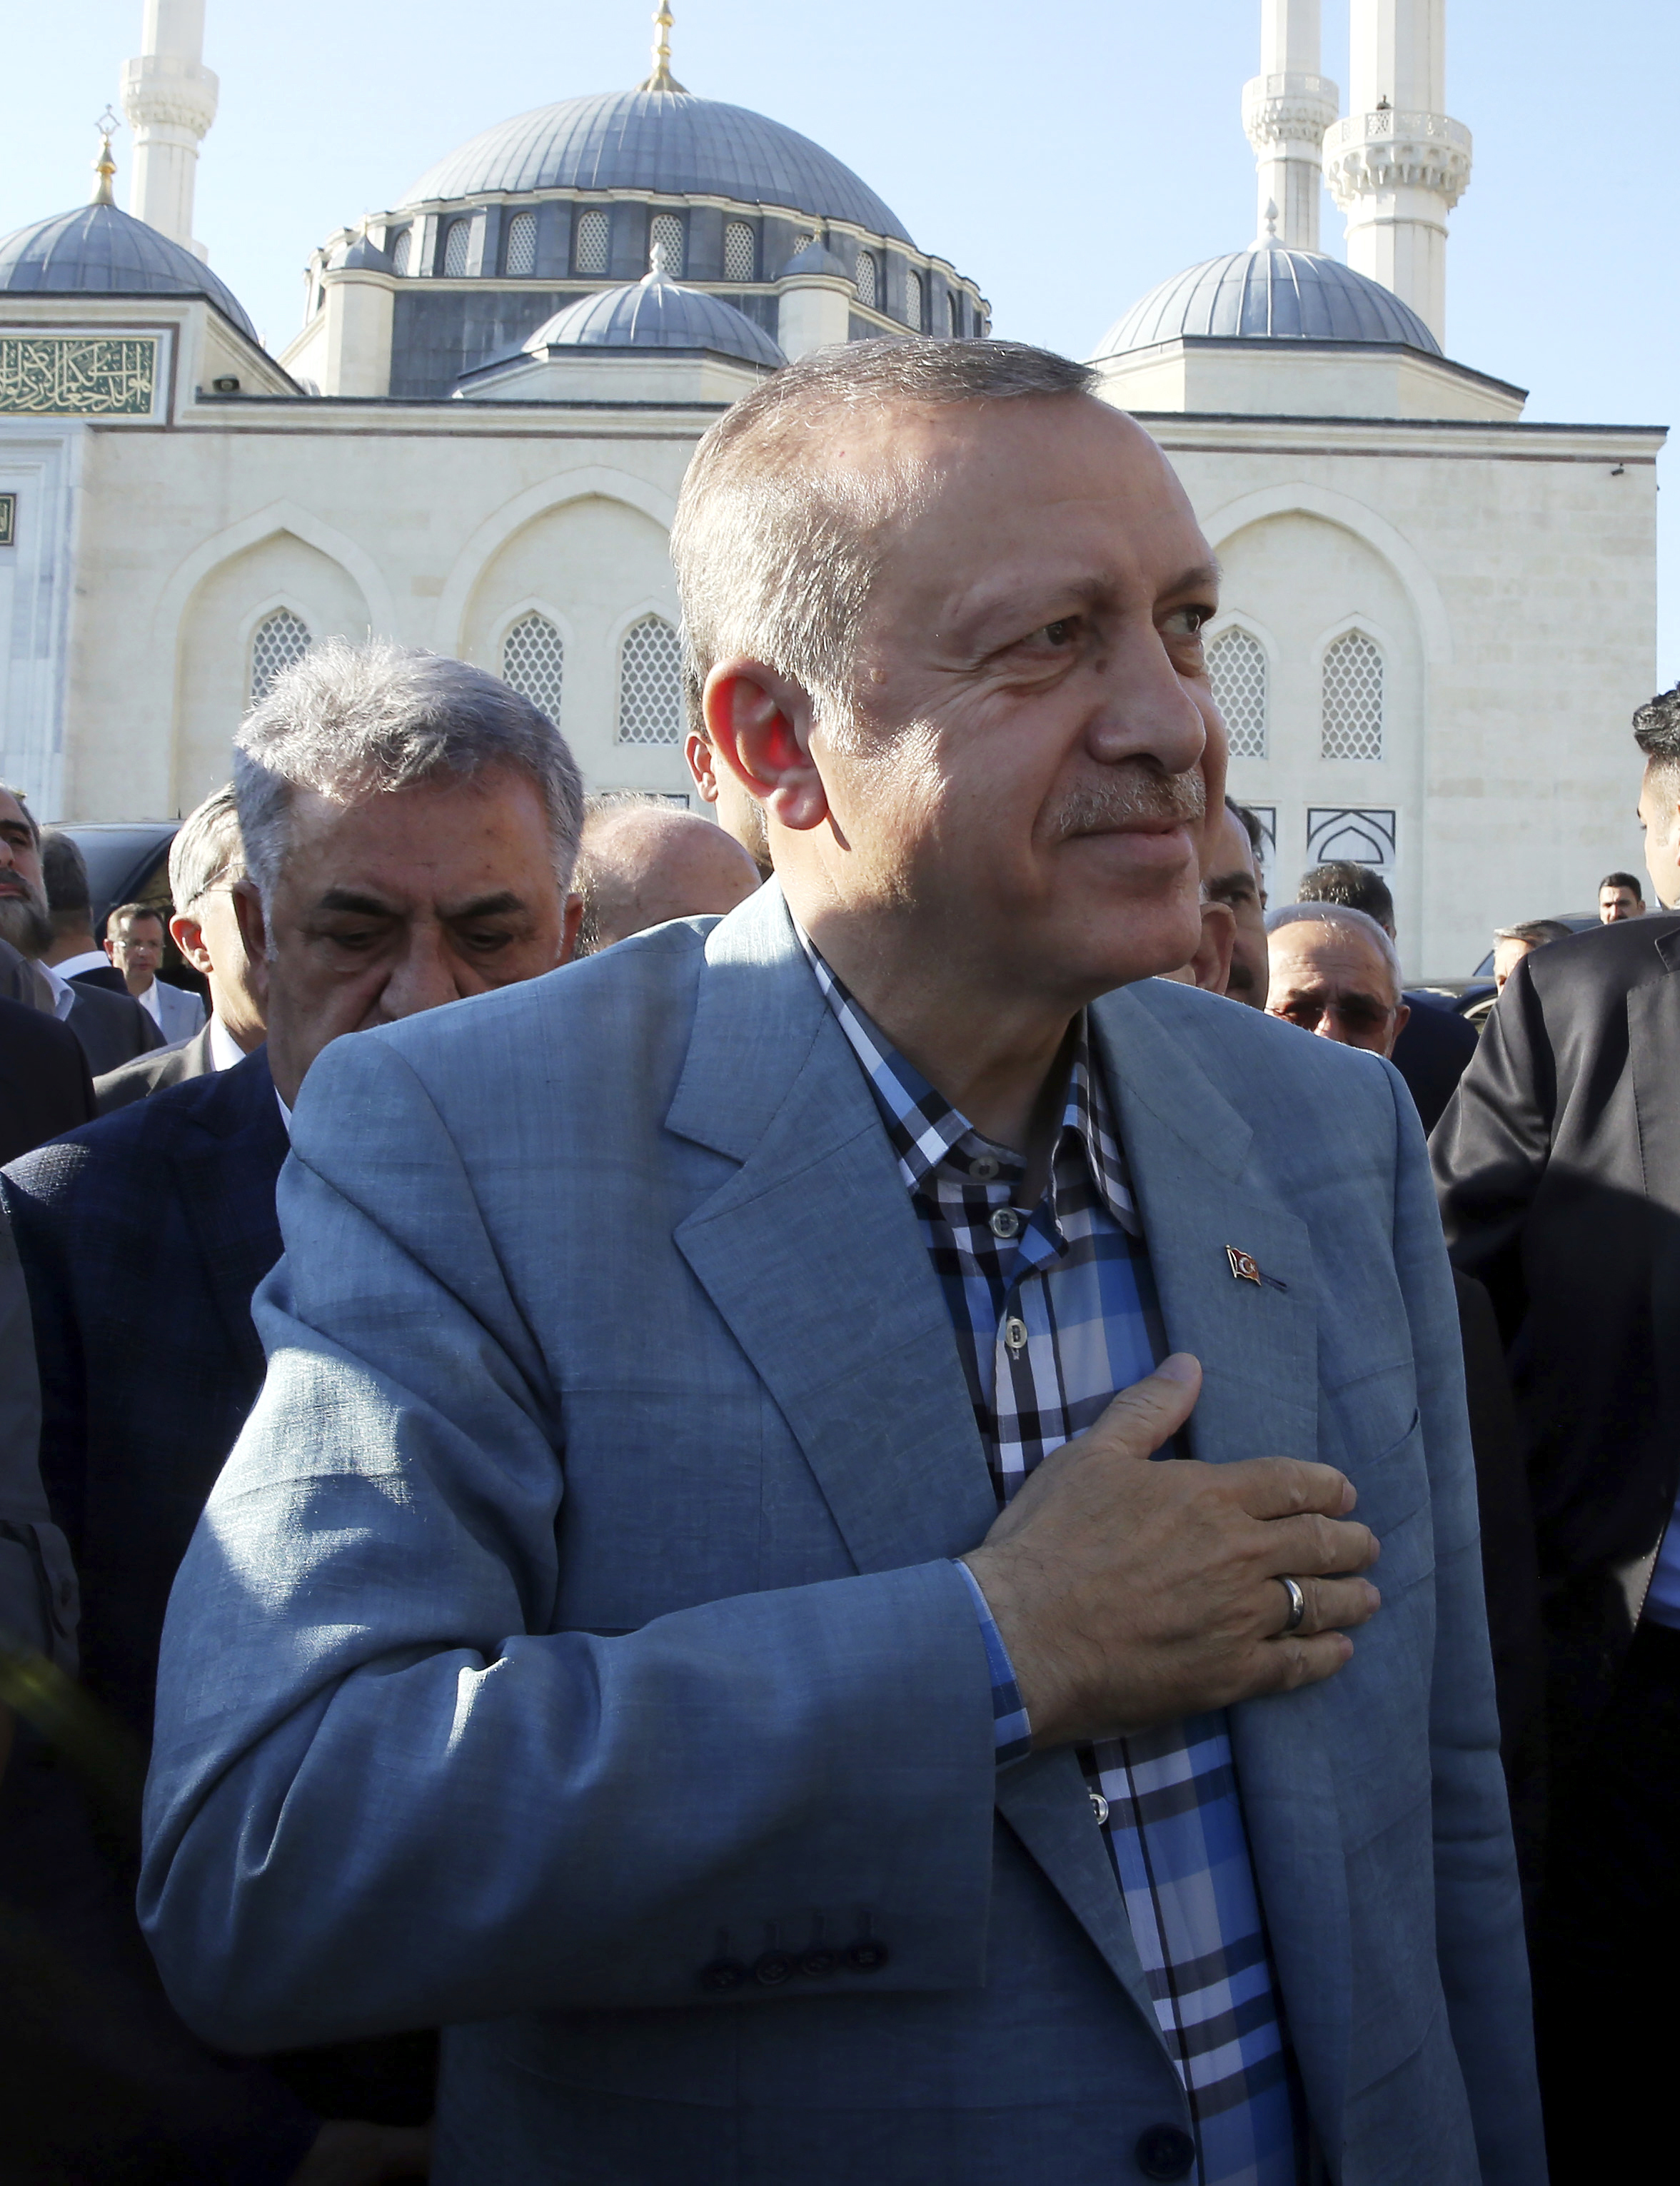 Ердоган се усмихва на събралото се множество вярващи пред джамията в Истанбул след съвземането си